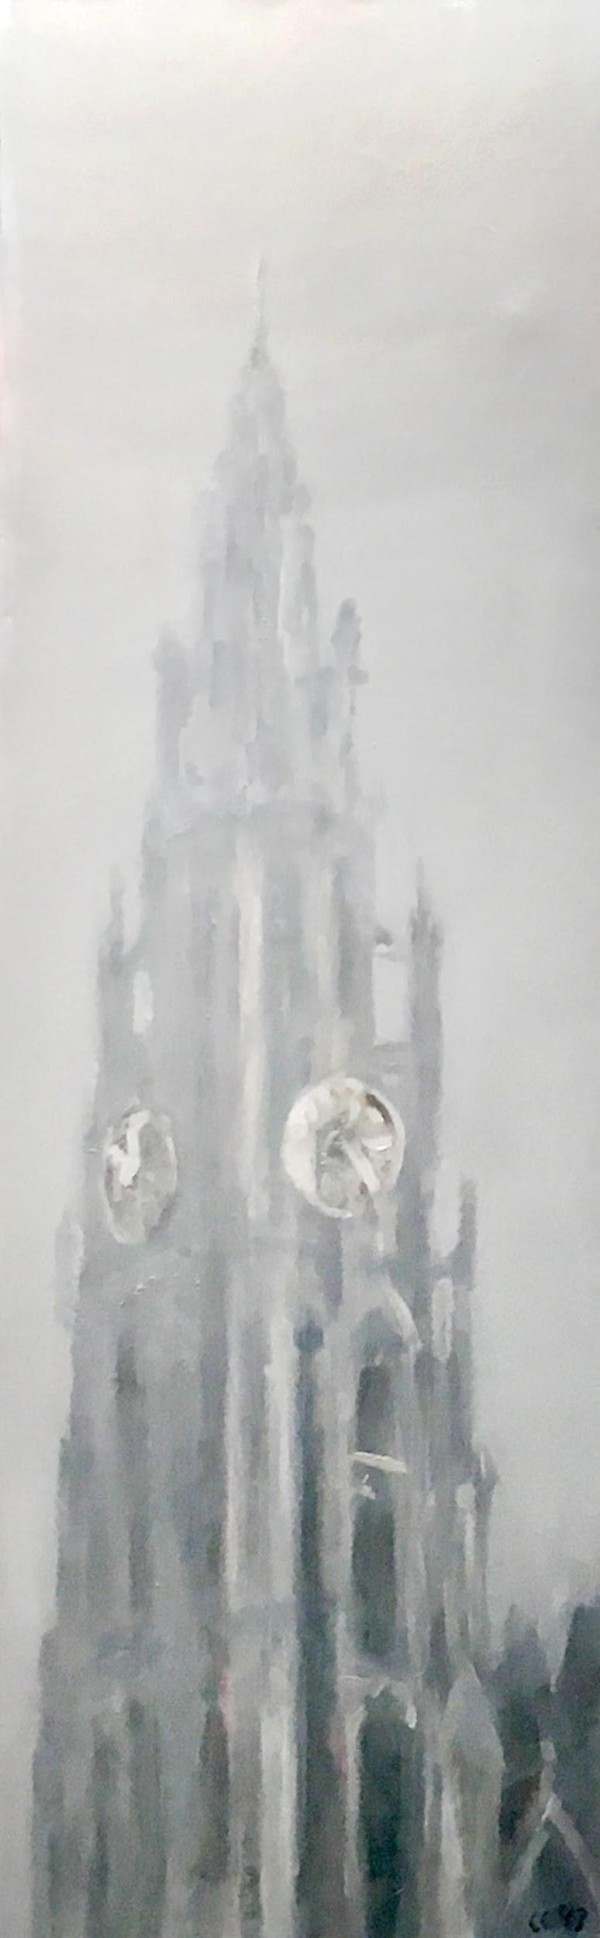 Antwerp cathedral tower by Léon Spierenburg